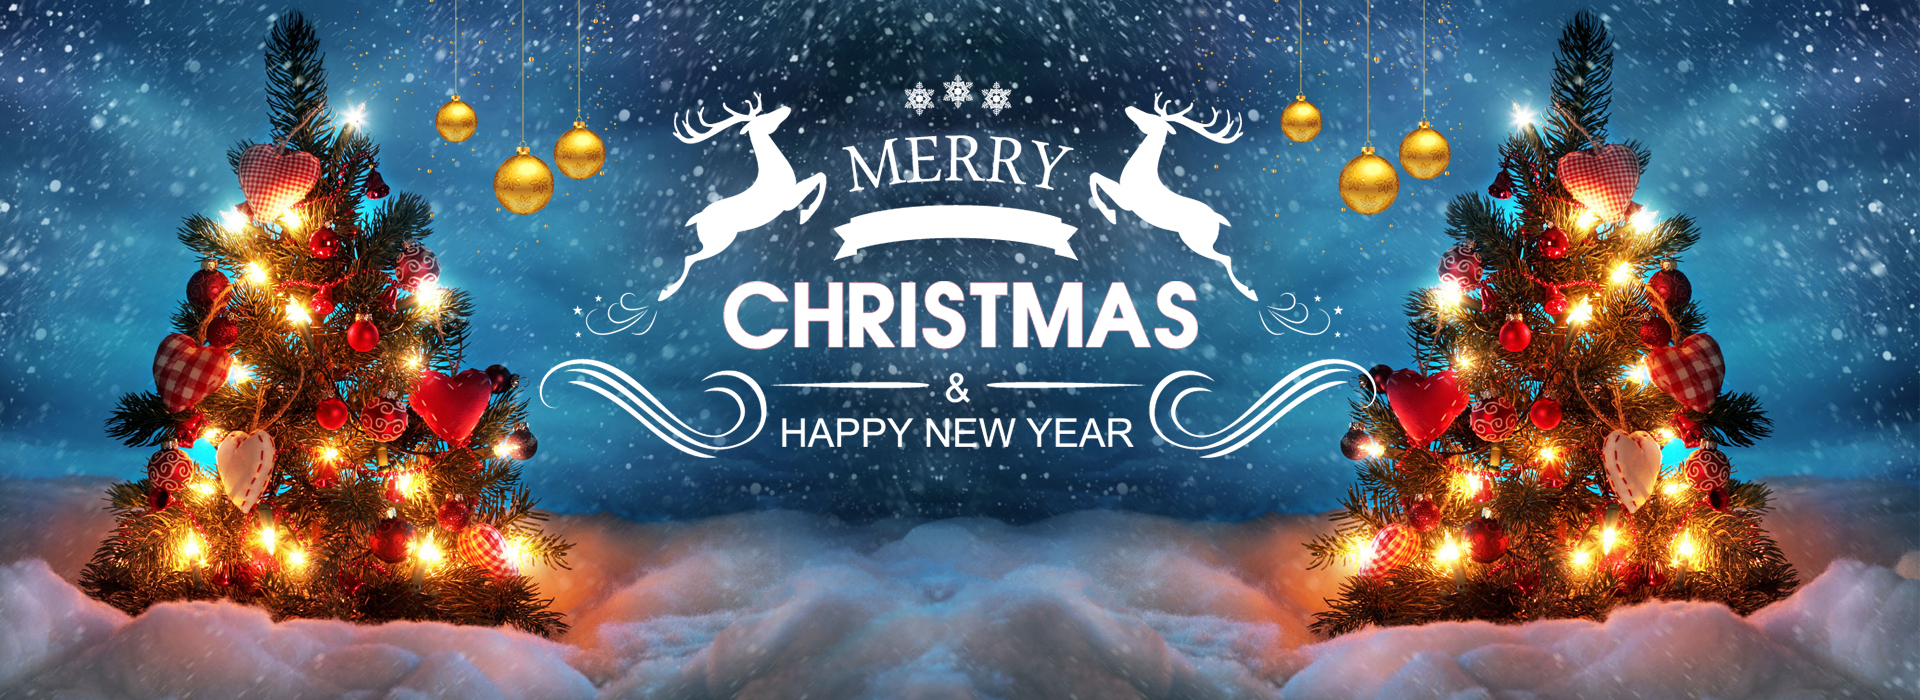 Merry X'mas & Happy New Year by BOYIN Digital Technology Co., Ltd